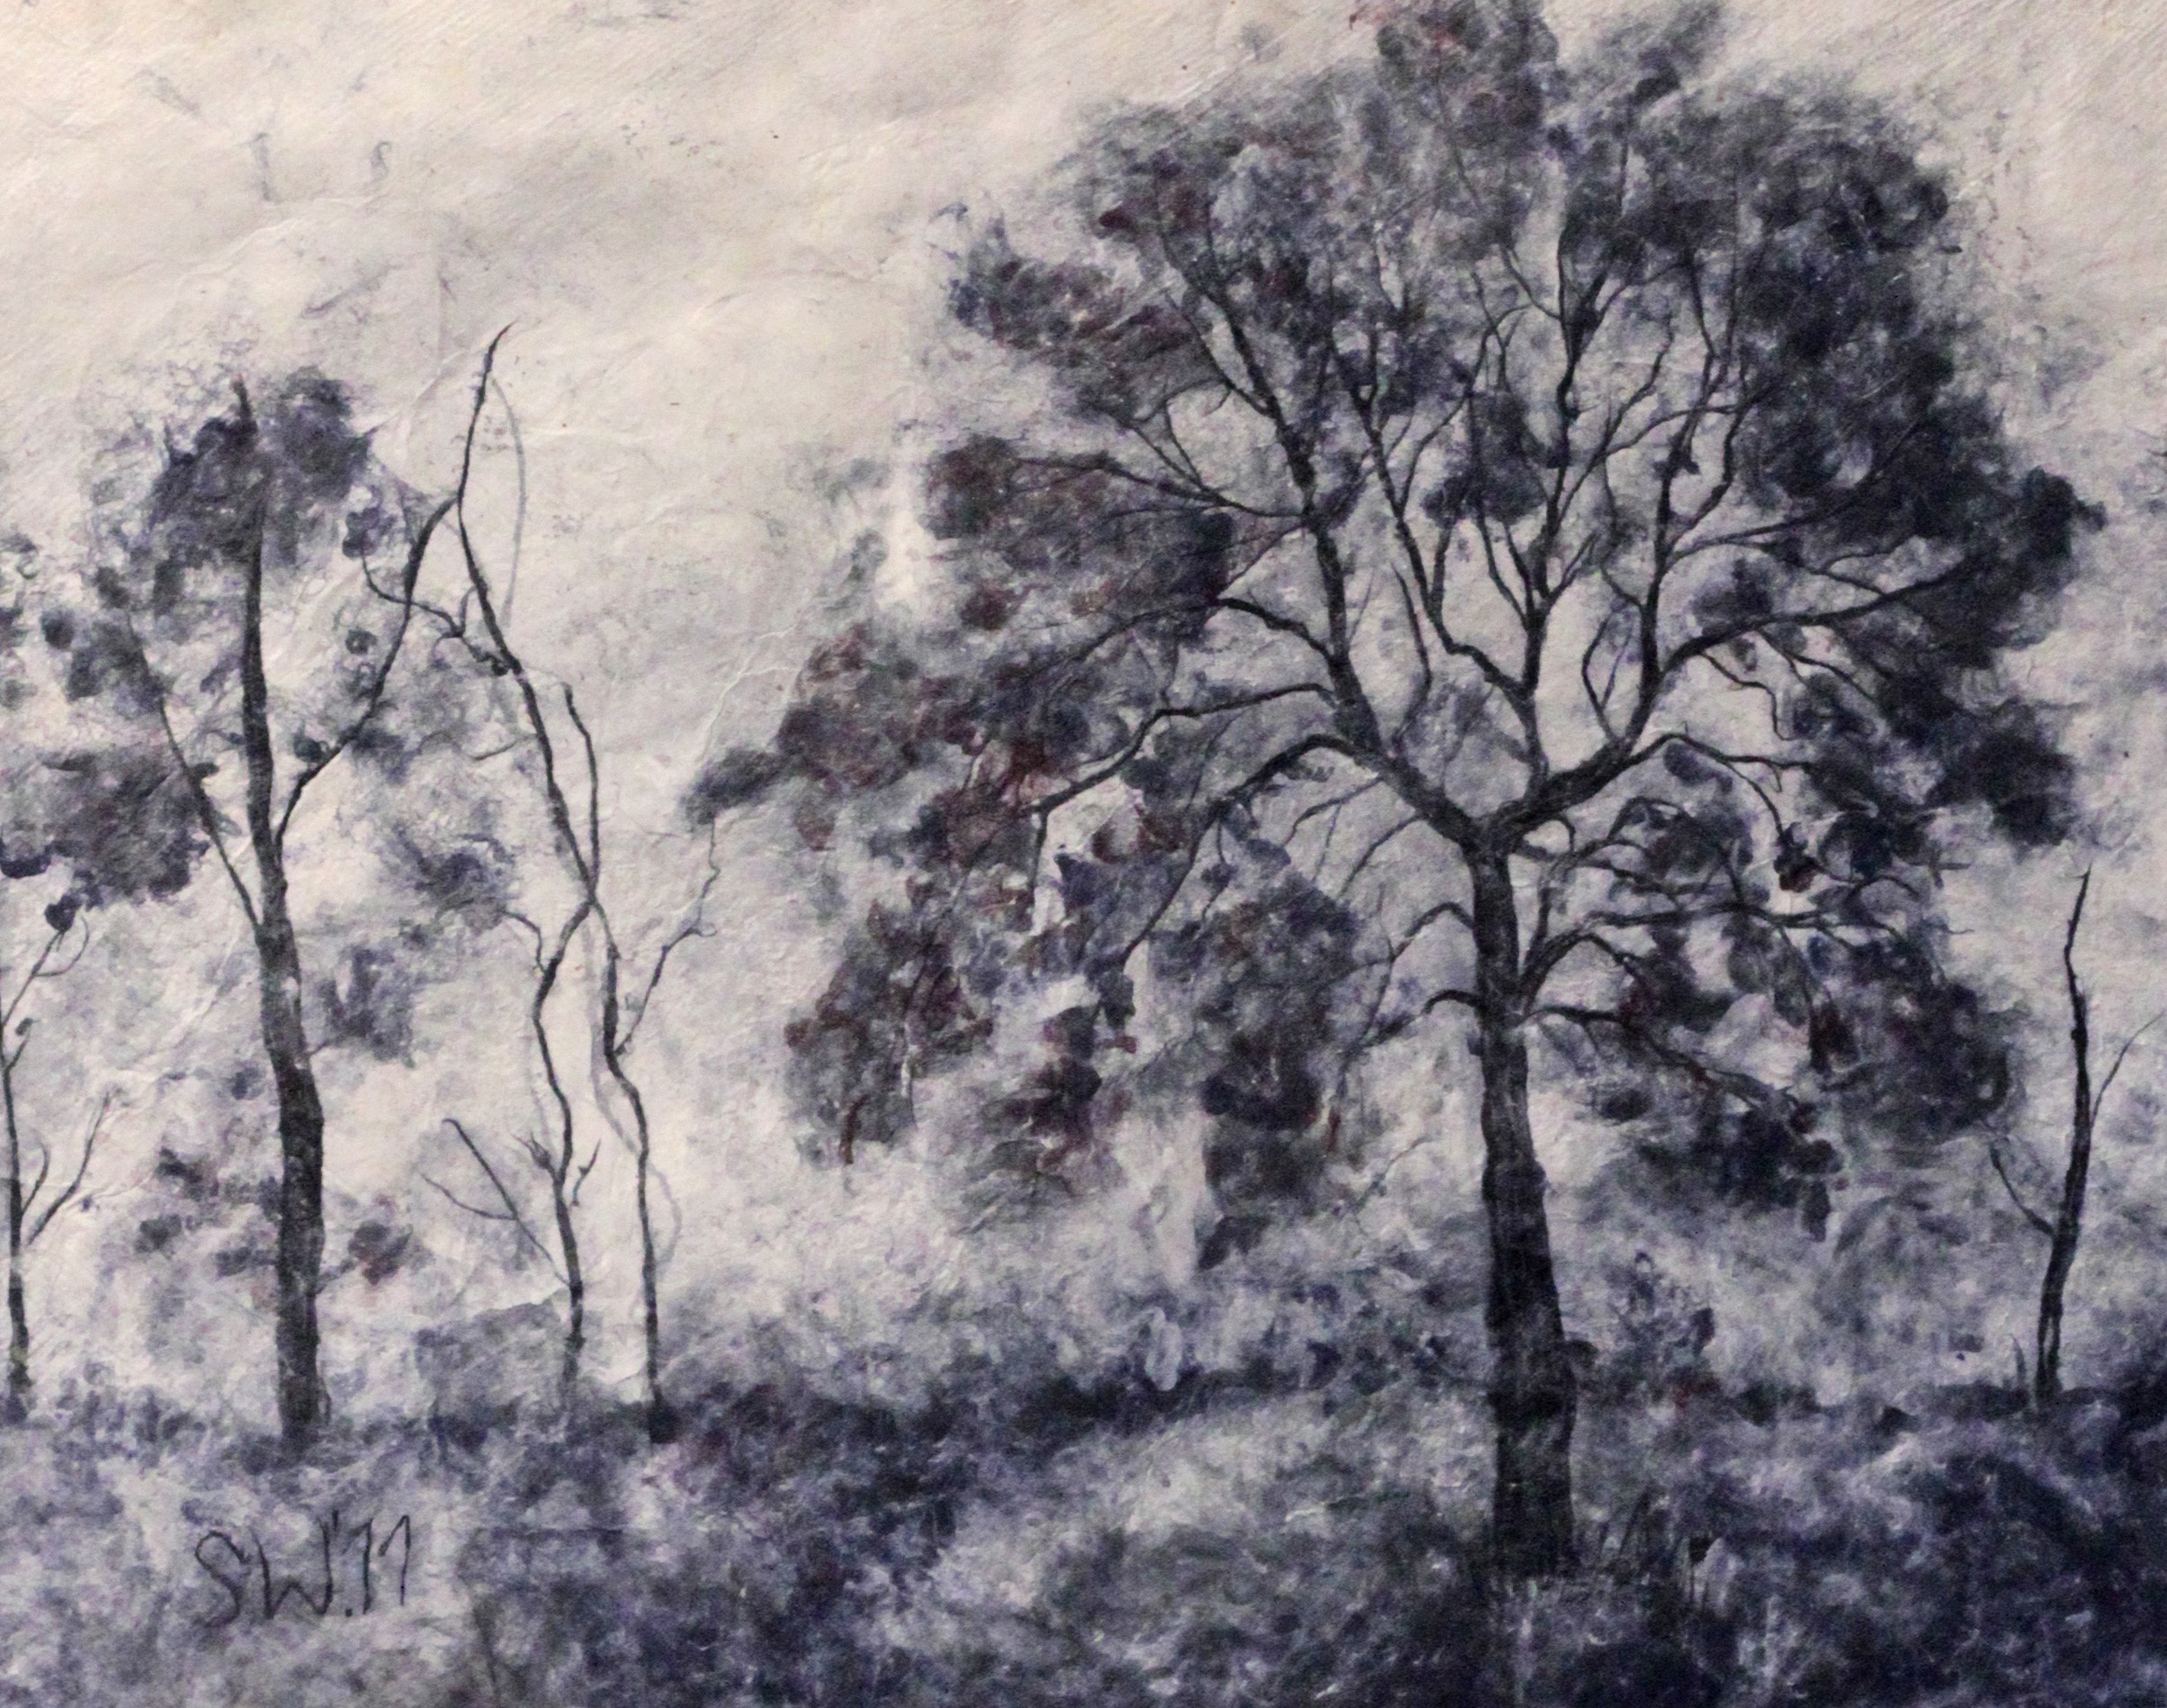 Bäume im Nebel | Malerei von Künstlerin Simone Westphal, Papiermalerei